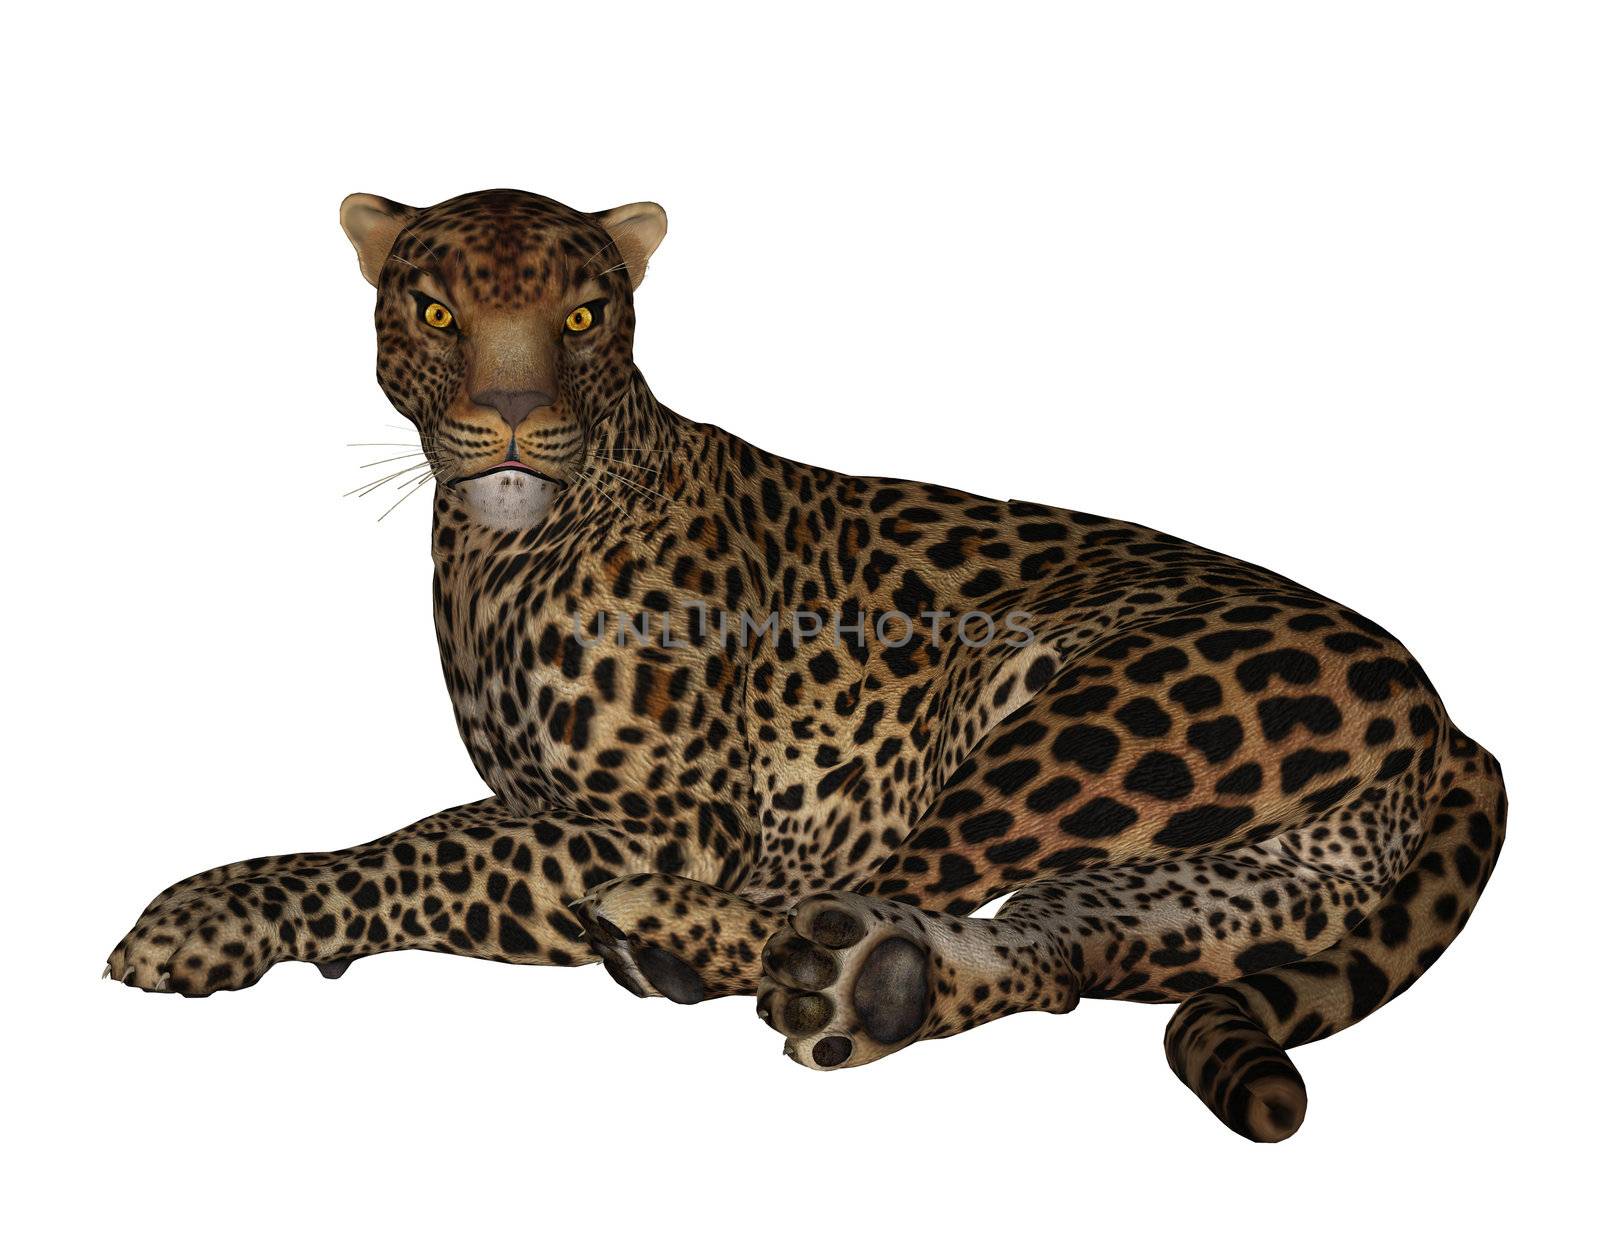 Jaguar by kathygold